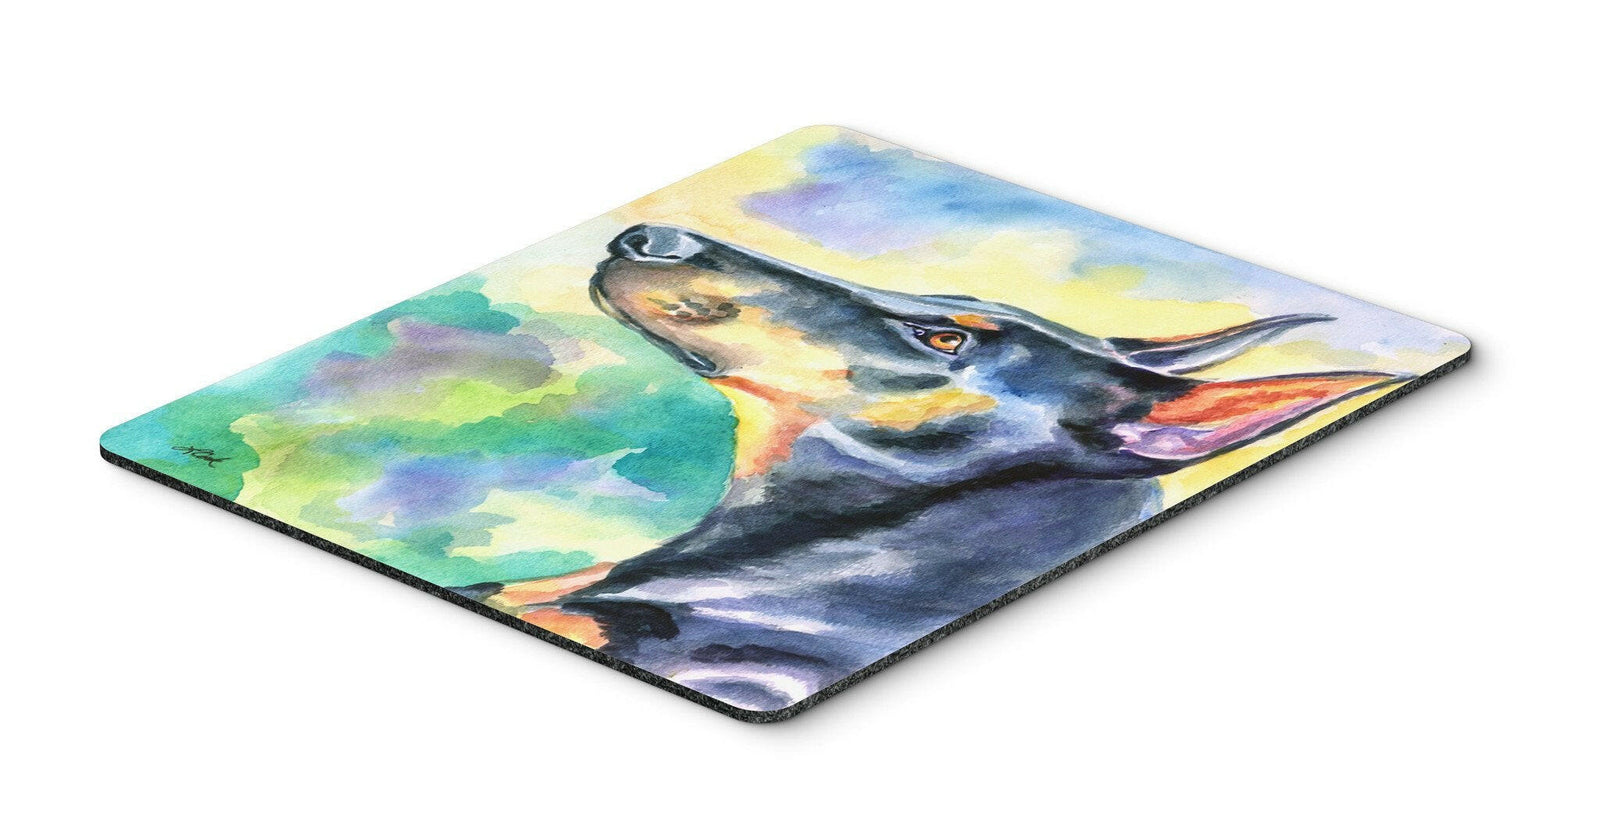 Watercolor Doberman Mouse Pad, Hot Pad or Trivet 7372MP by Caroline's Treasures